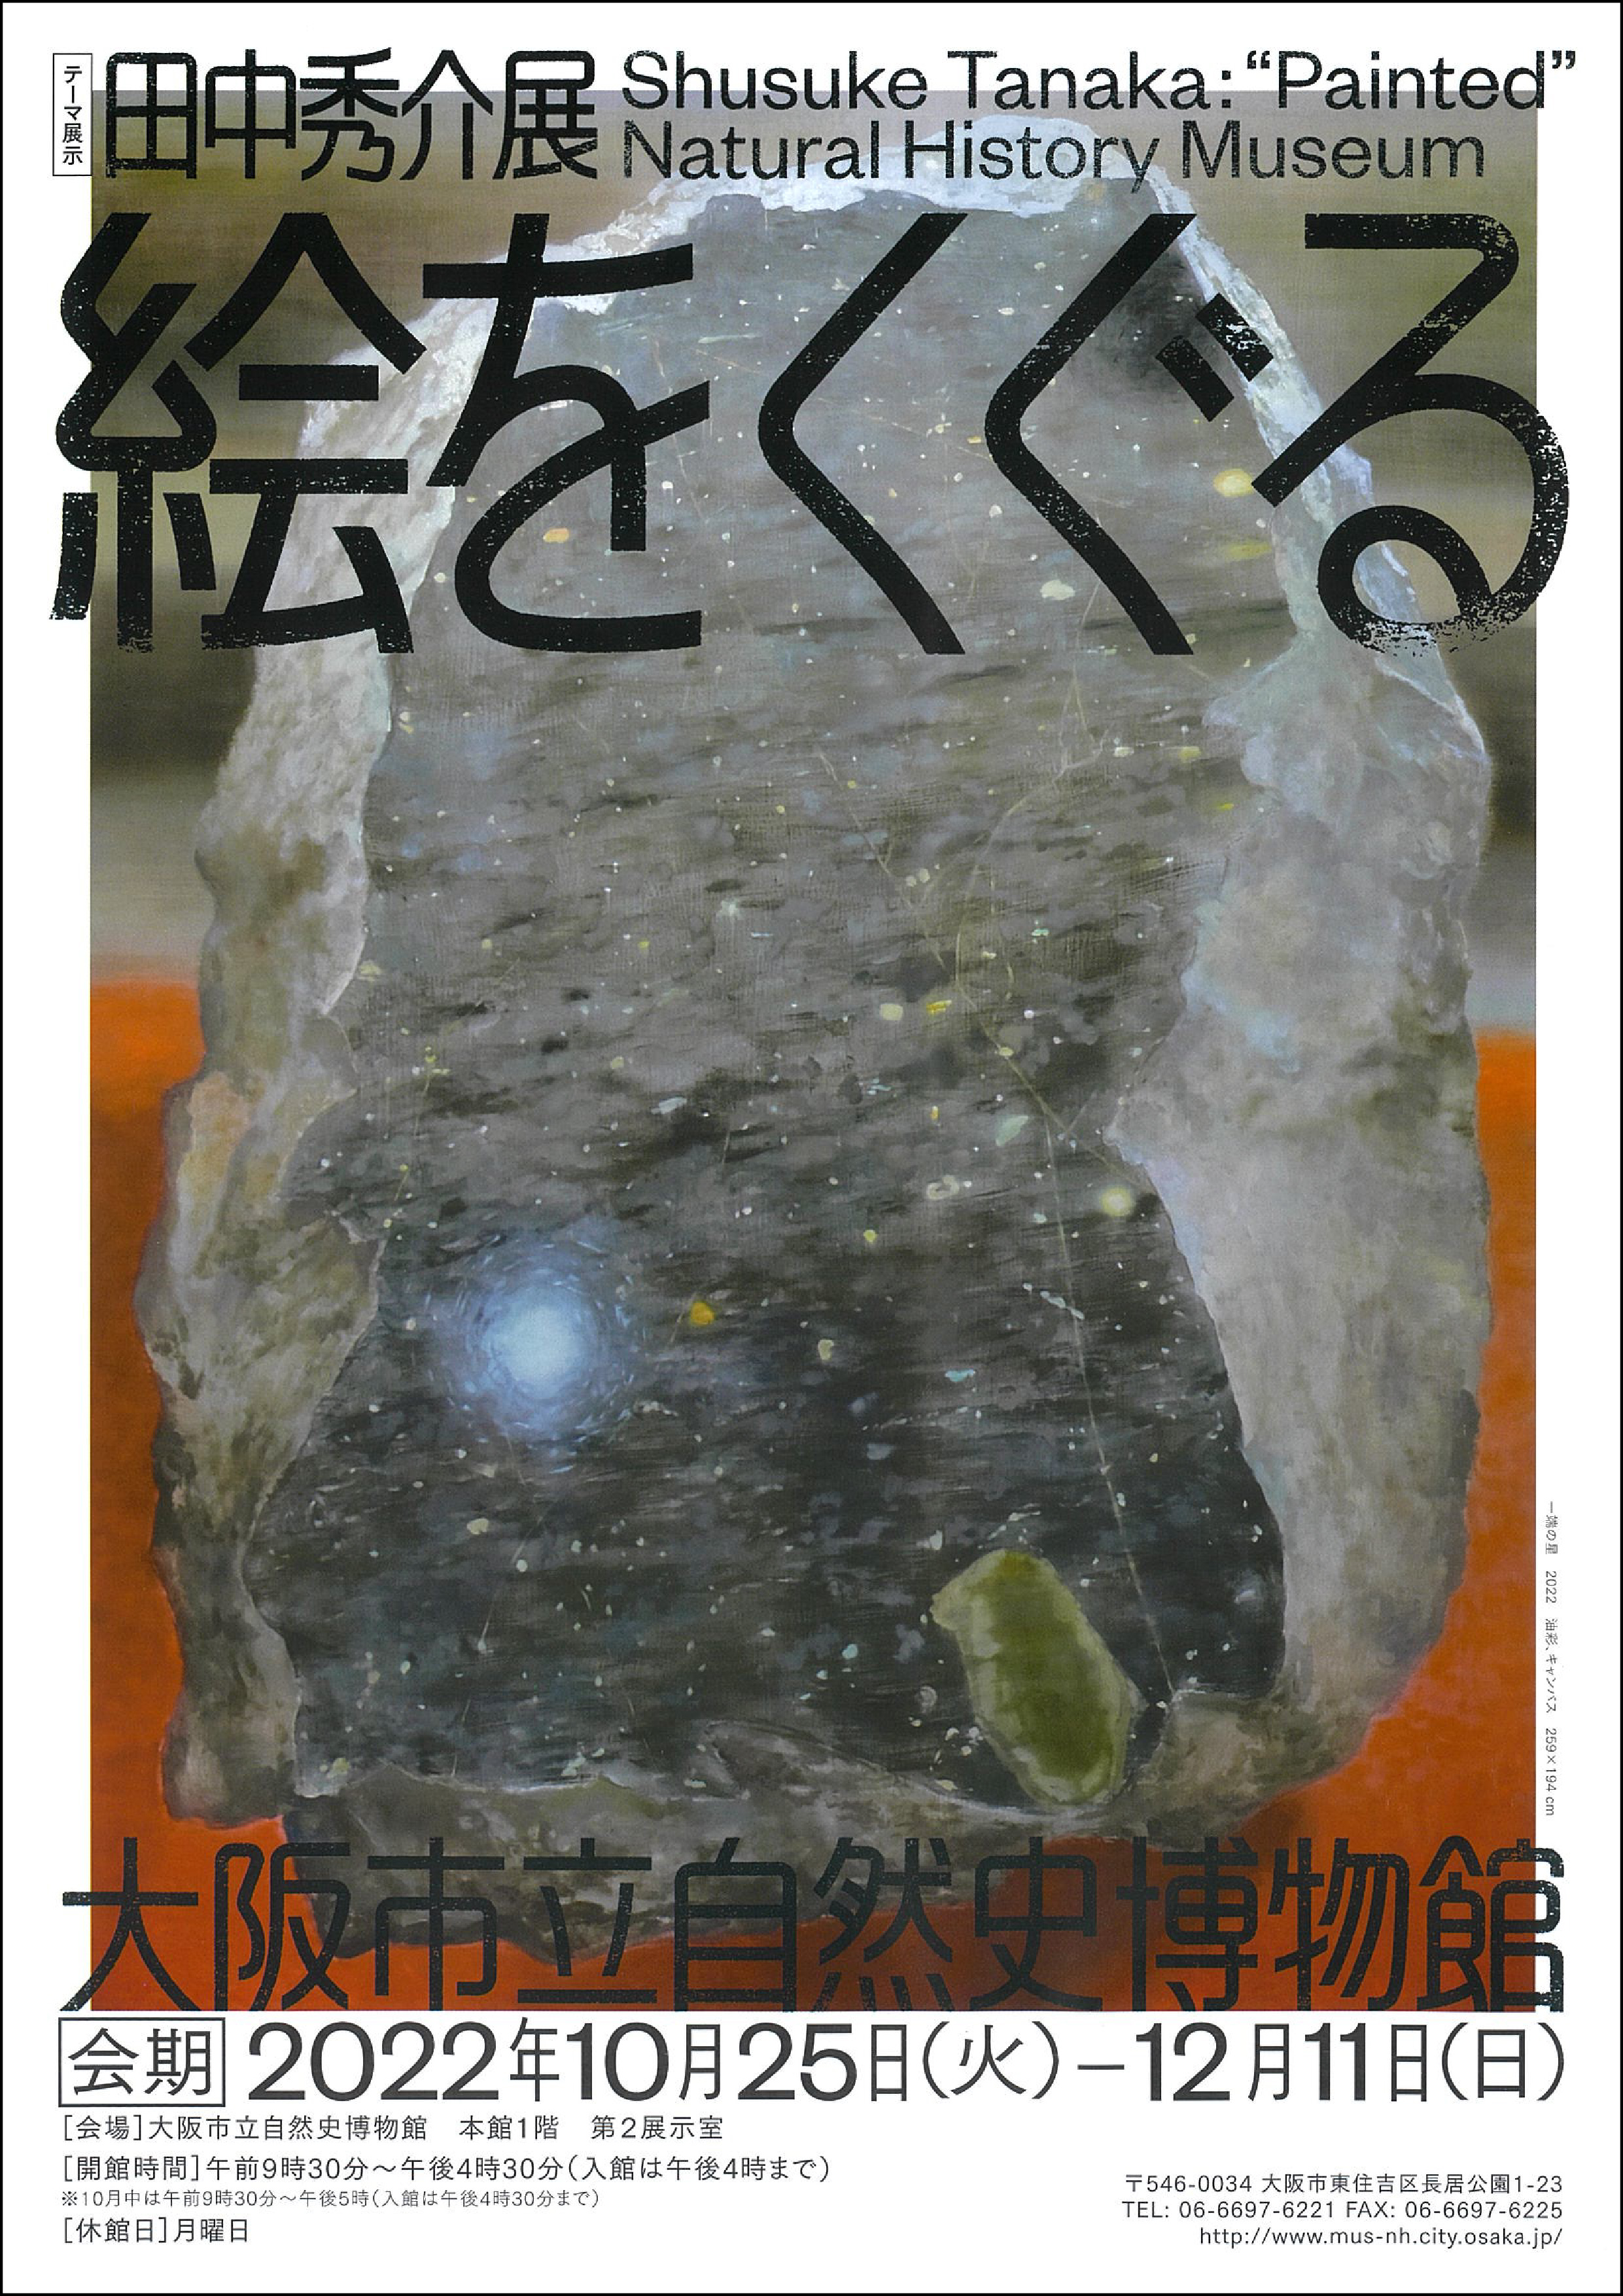 テーマ展示「田中秀介展：絵をくぐる大阪市立自然史博物館」